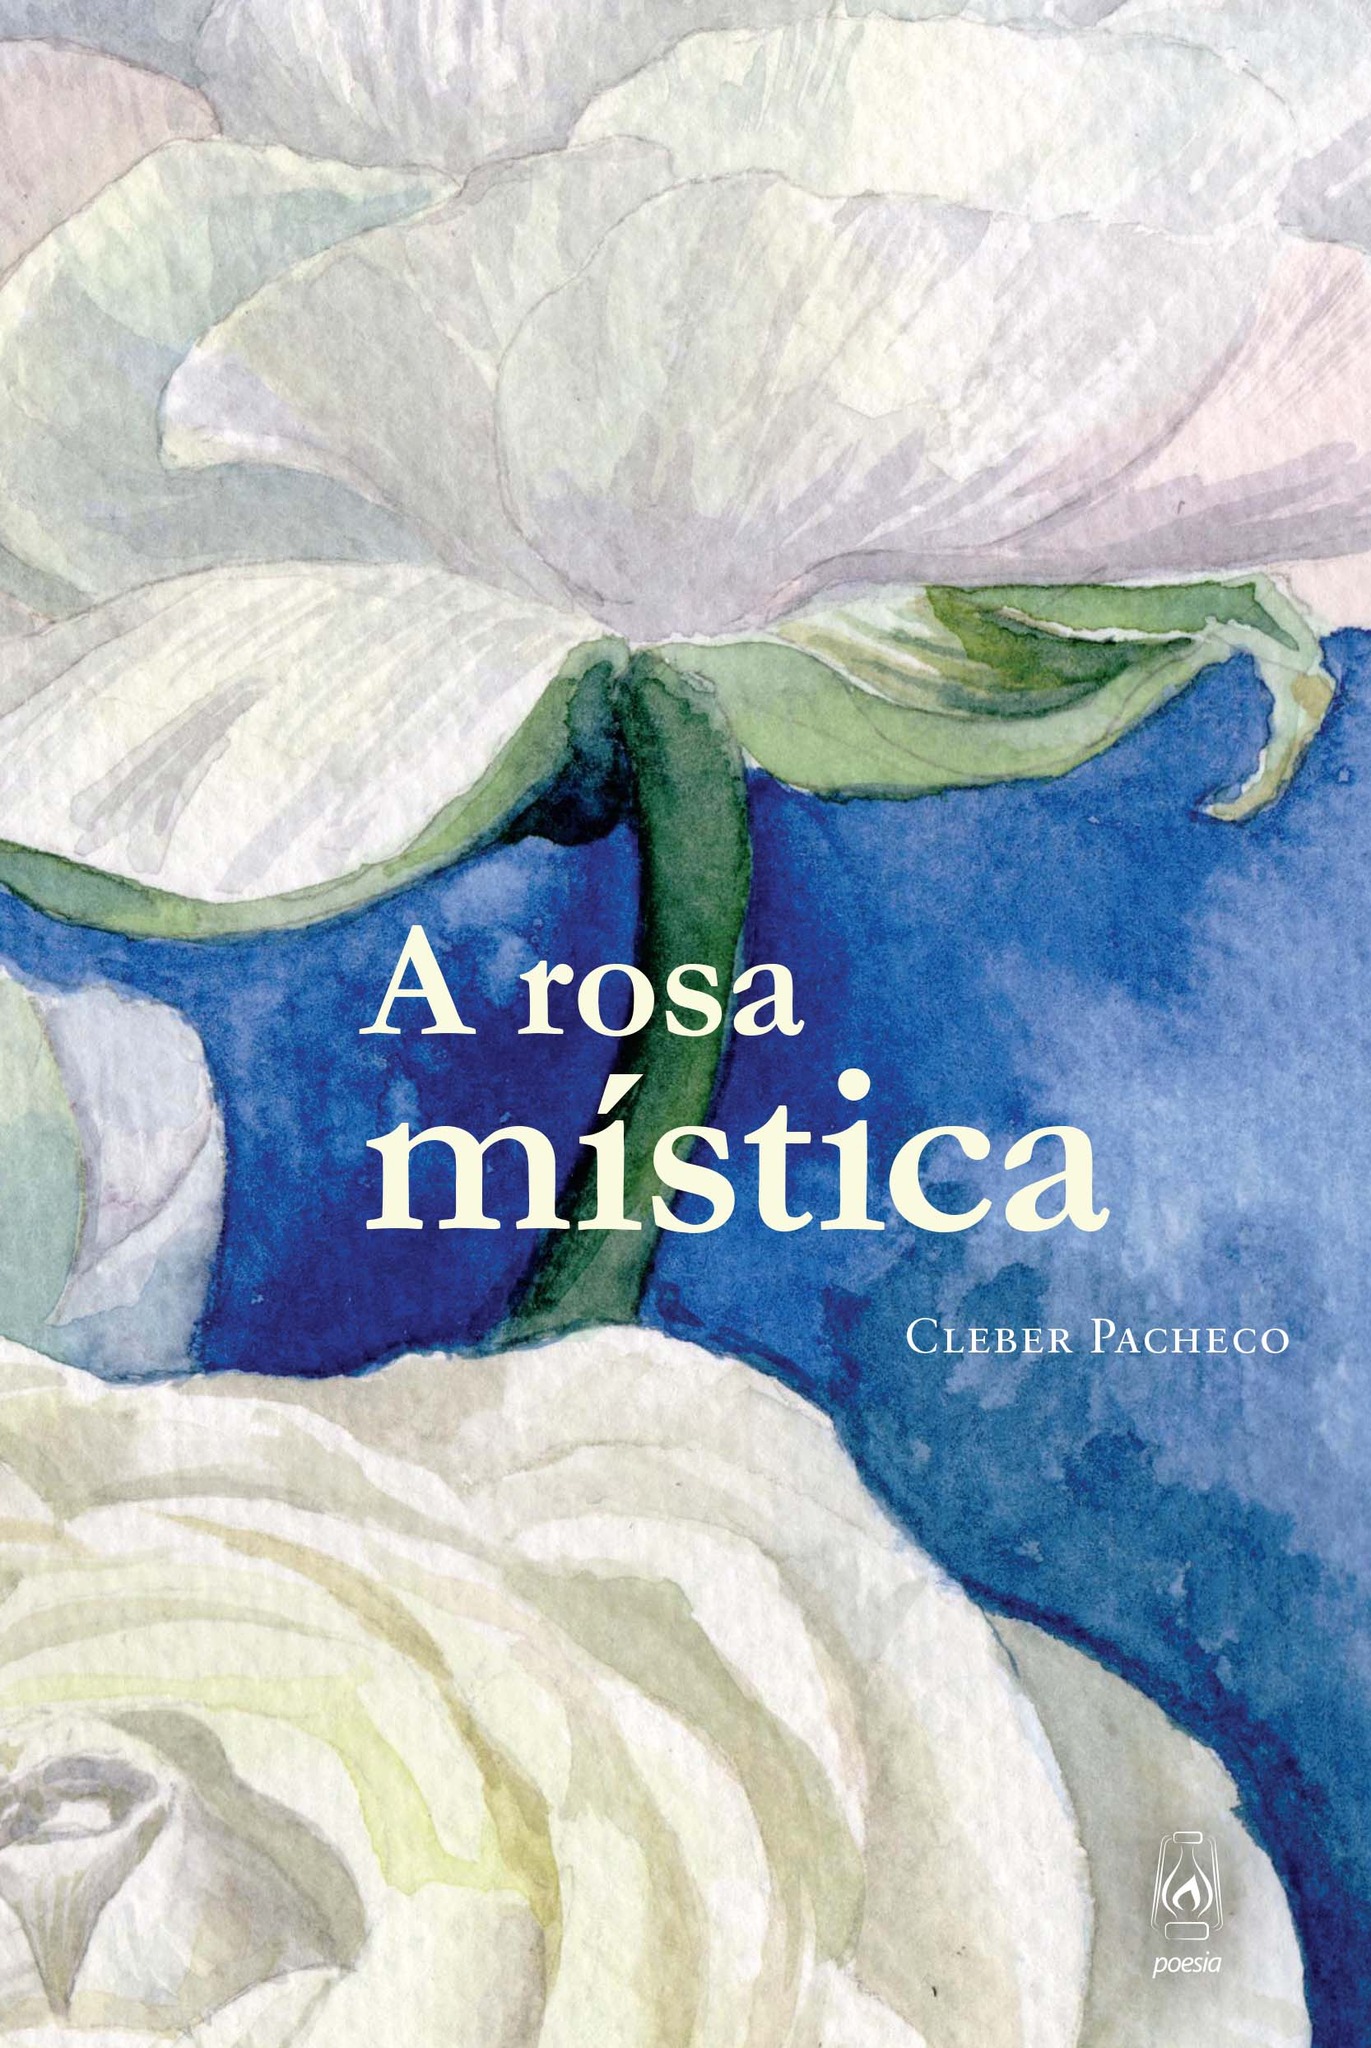 Cleber Pacheco rosa mística - Livro de poemas, A rosa mística, percorre pelo poema o movimento dos contrários | Fernando Andrade